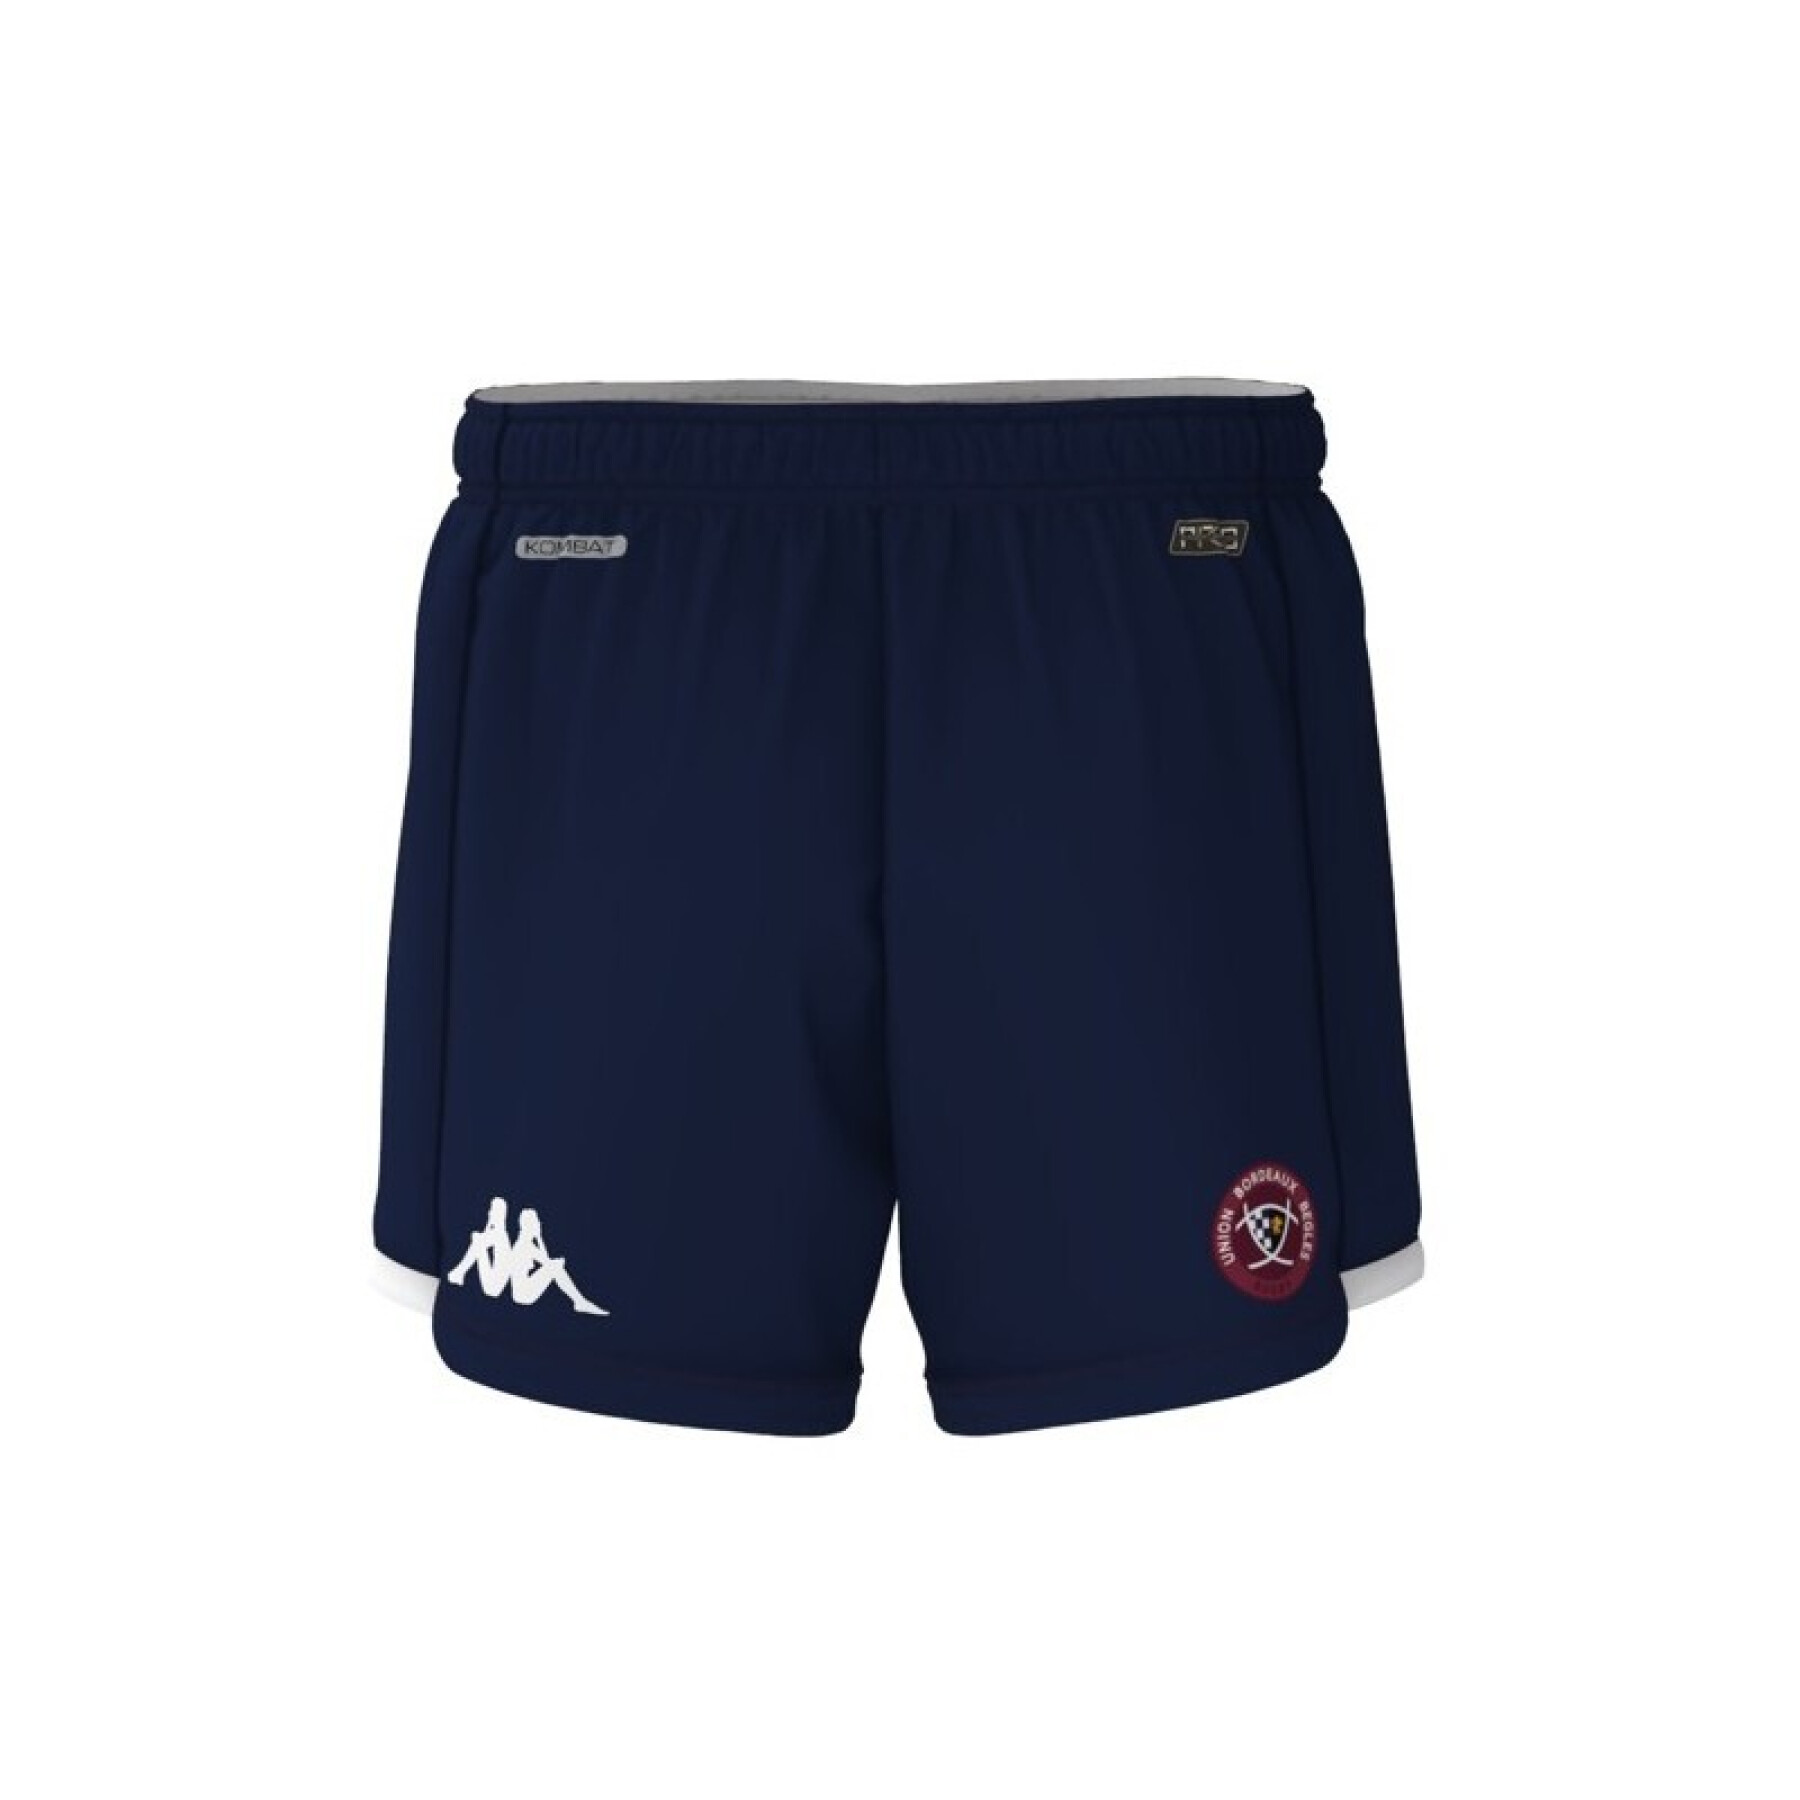 Children's shorts Union Bordeaux-Bègles Kombat Ryder 2023/24